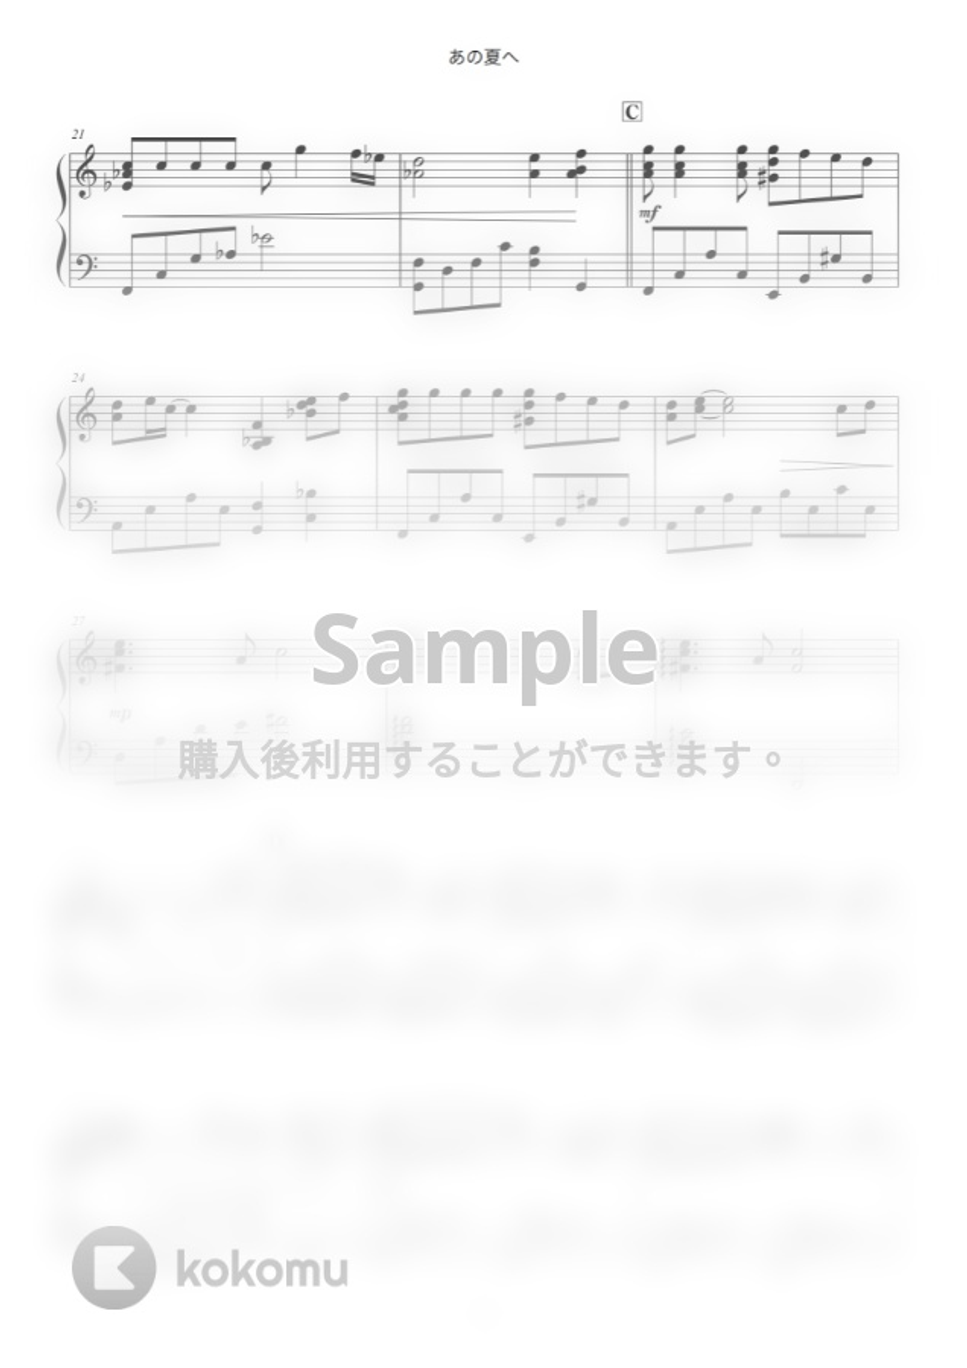 久石譲 - あの夏へ by ABIA Music